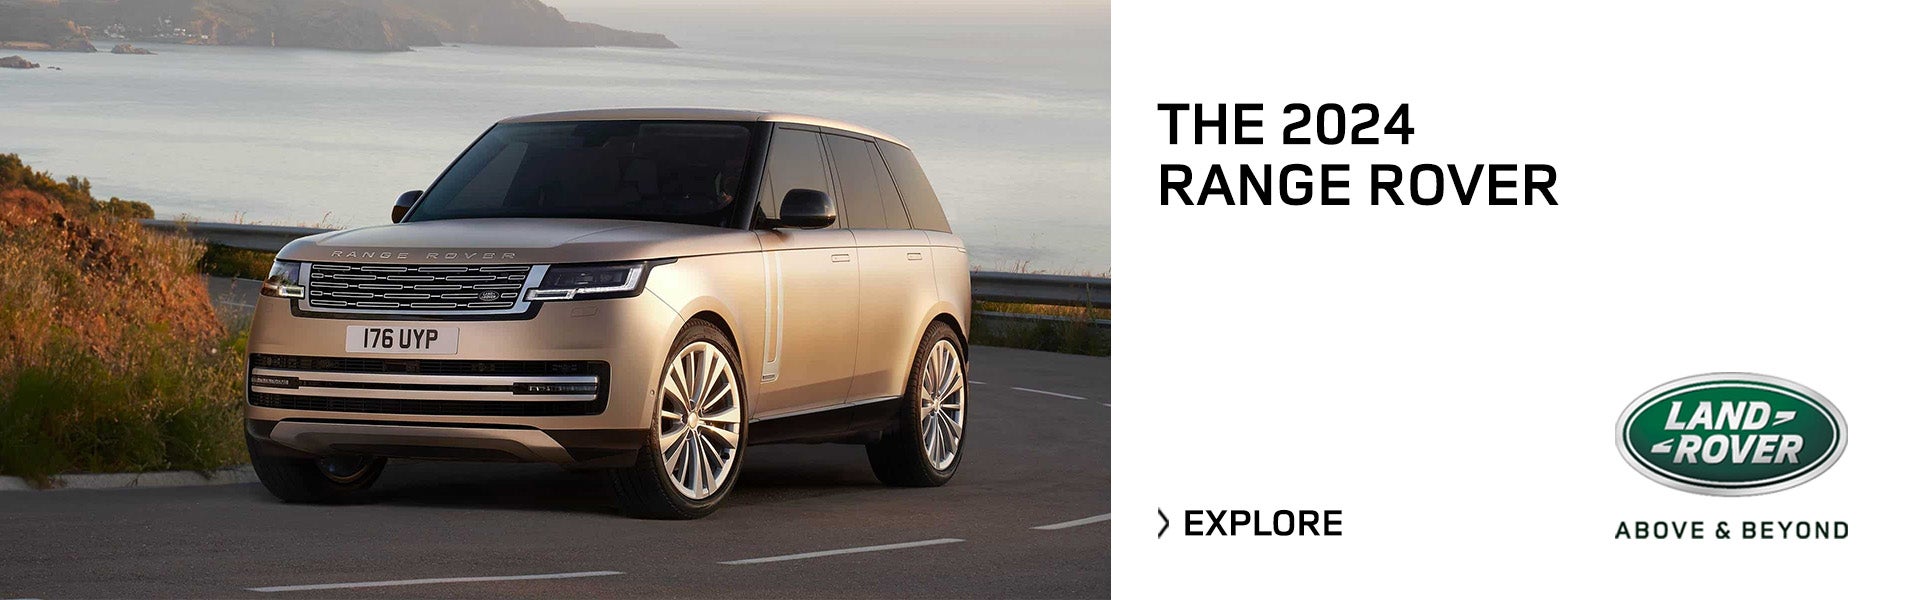 2024 Range Rover